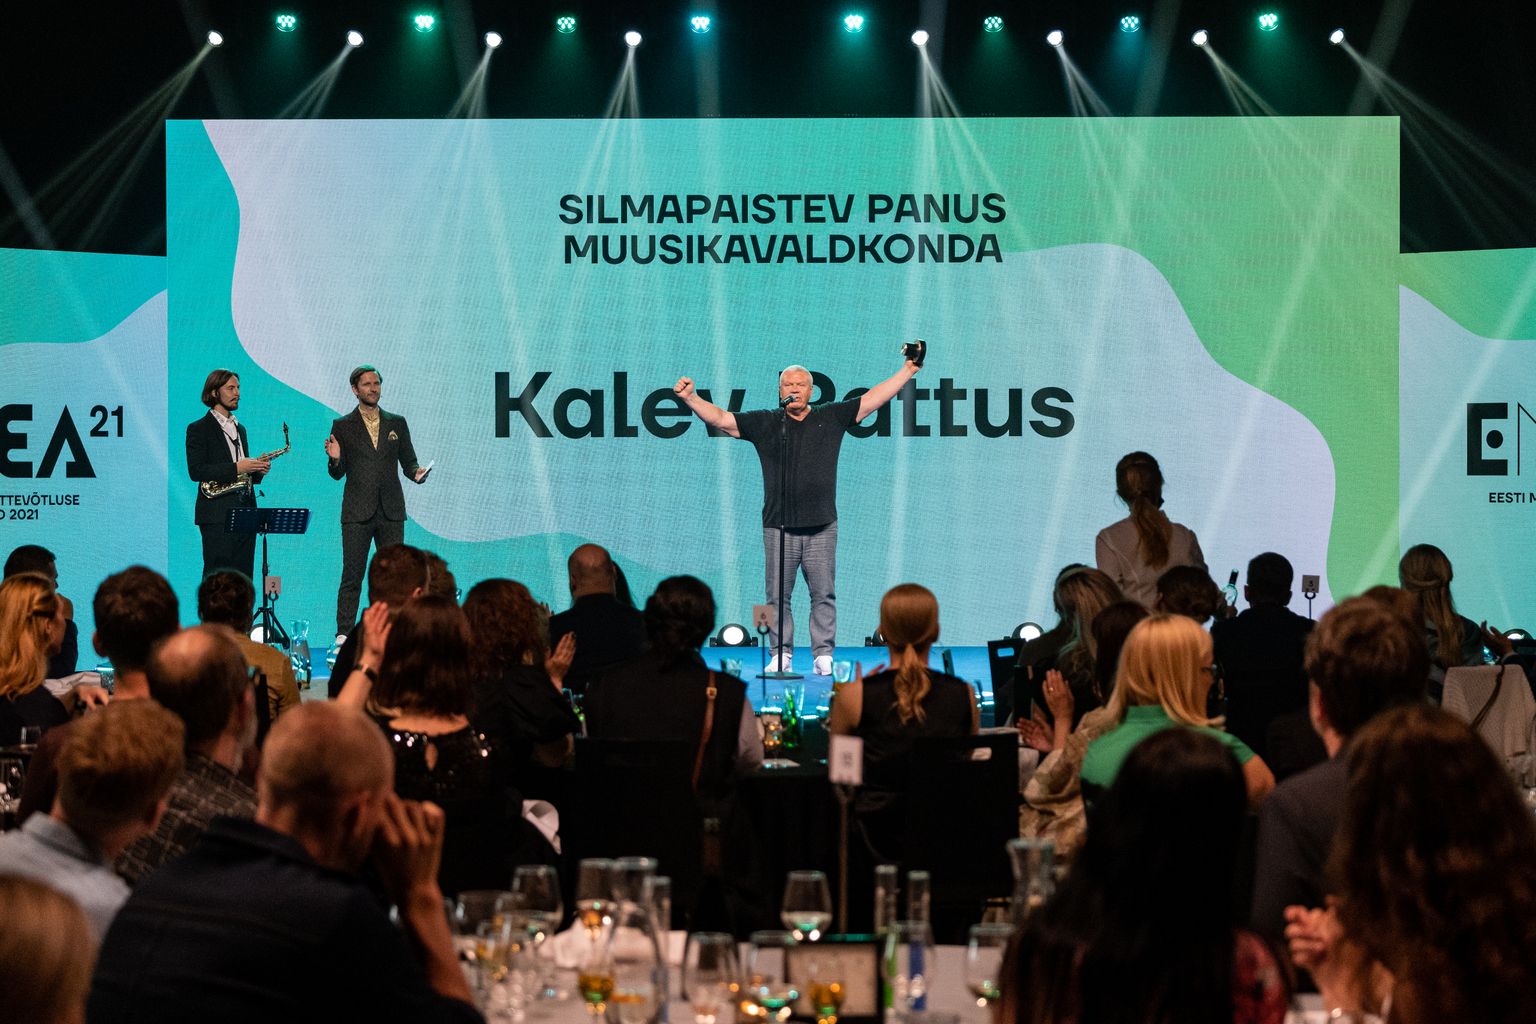 Eesti Muusikaettevõtluse Auhinnad 2021 gala PROTO avastustehases